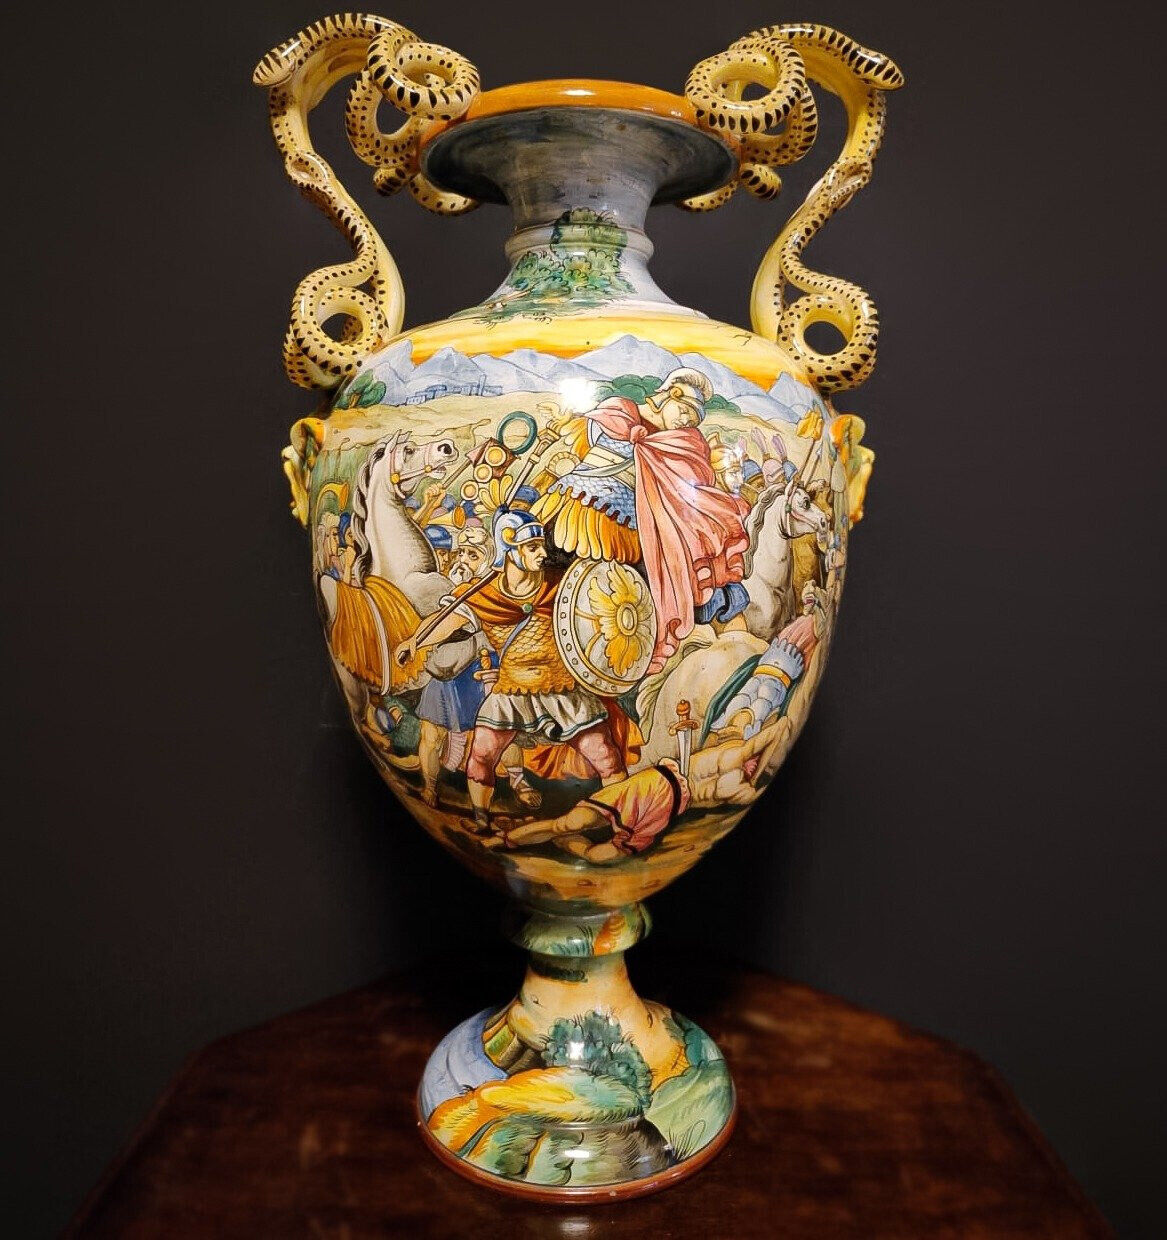 Unique XL Italian majolica vase 25.5 in. Early 1900s with Roman Battle scene